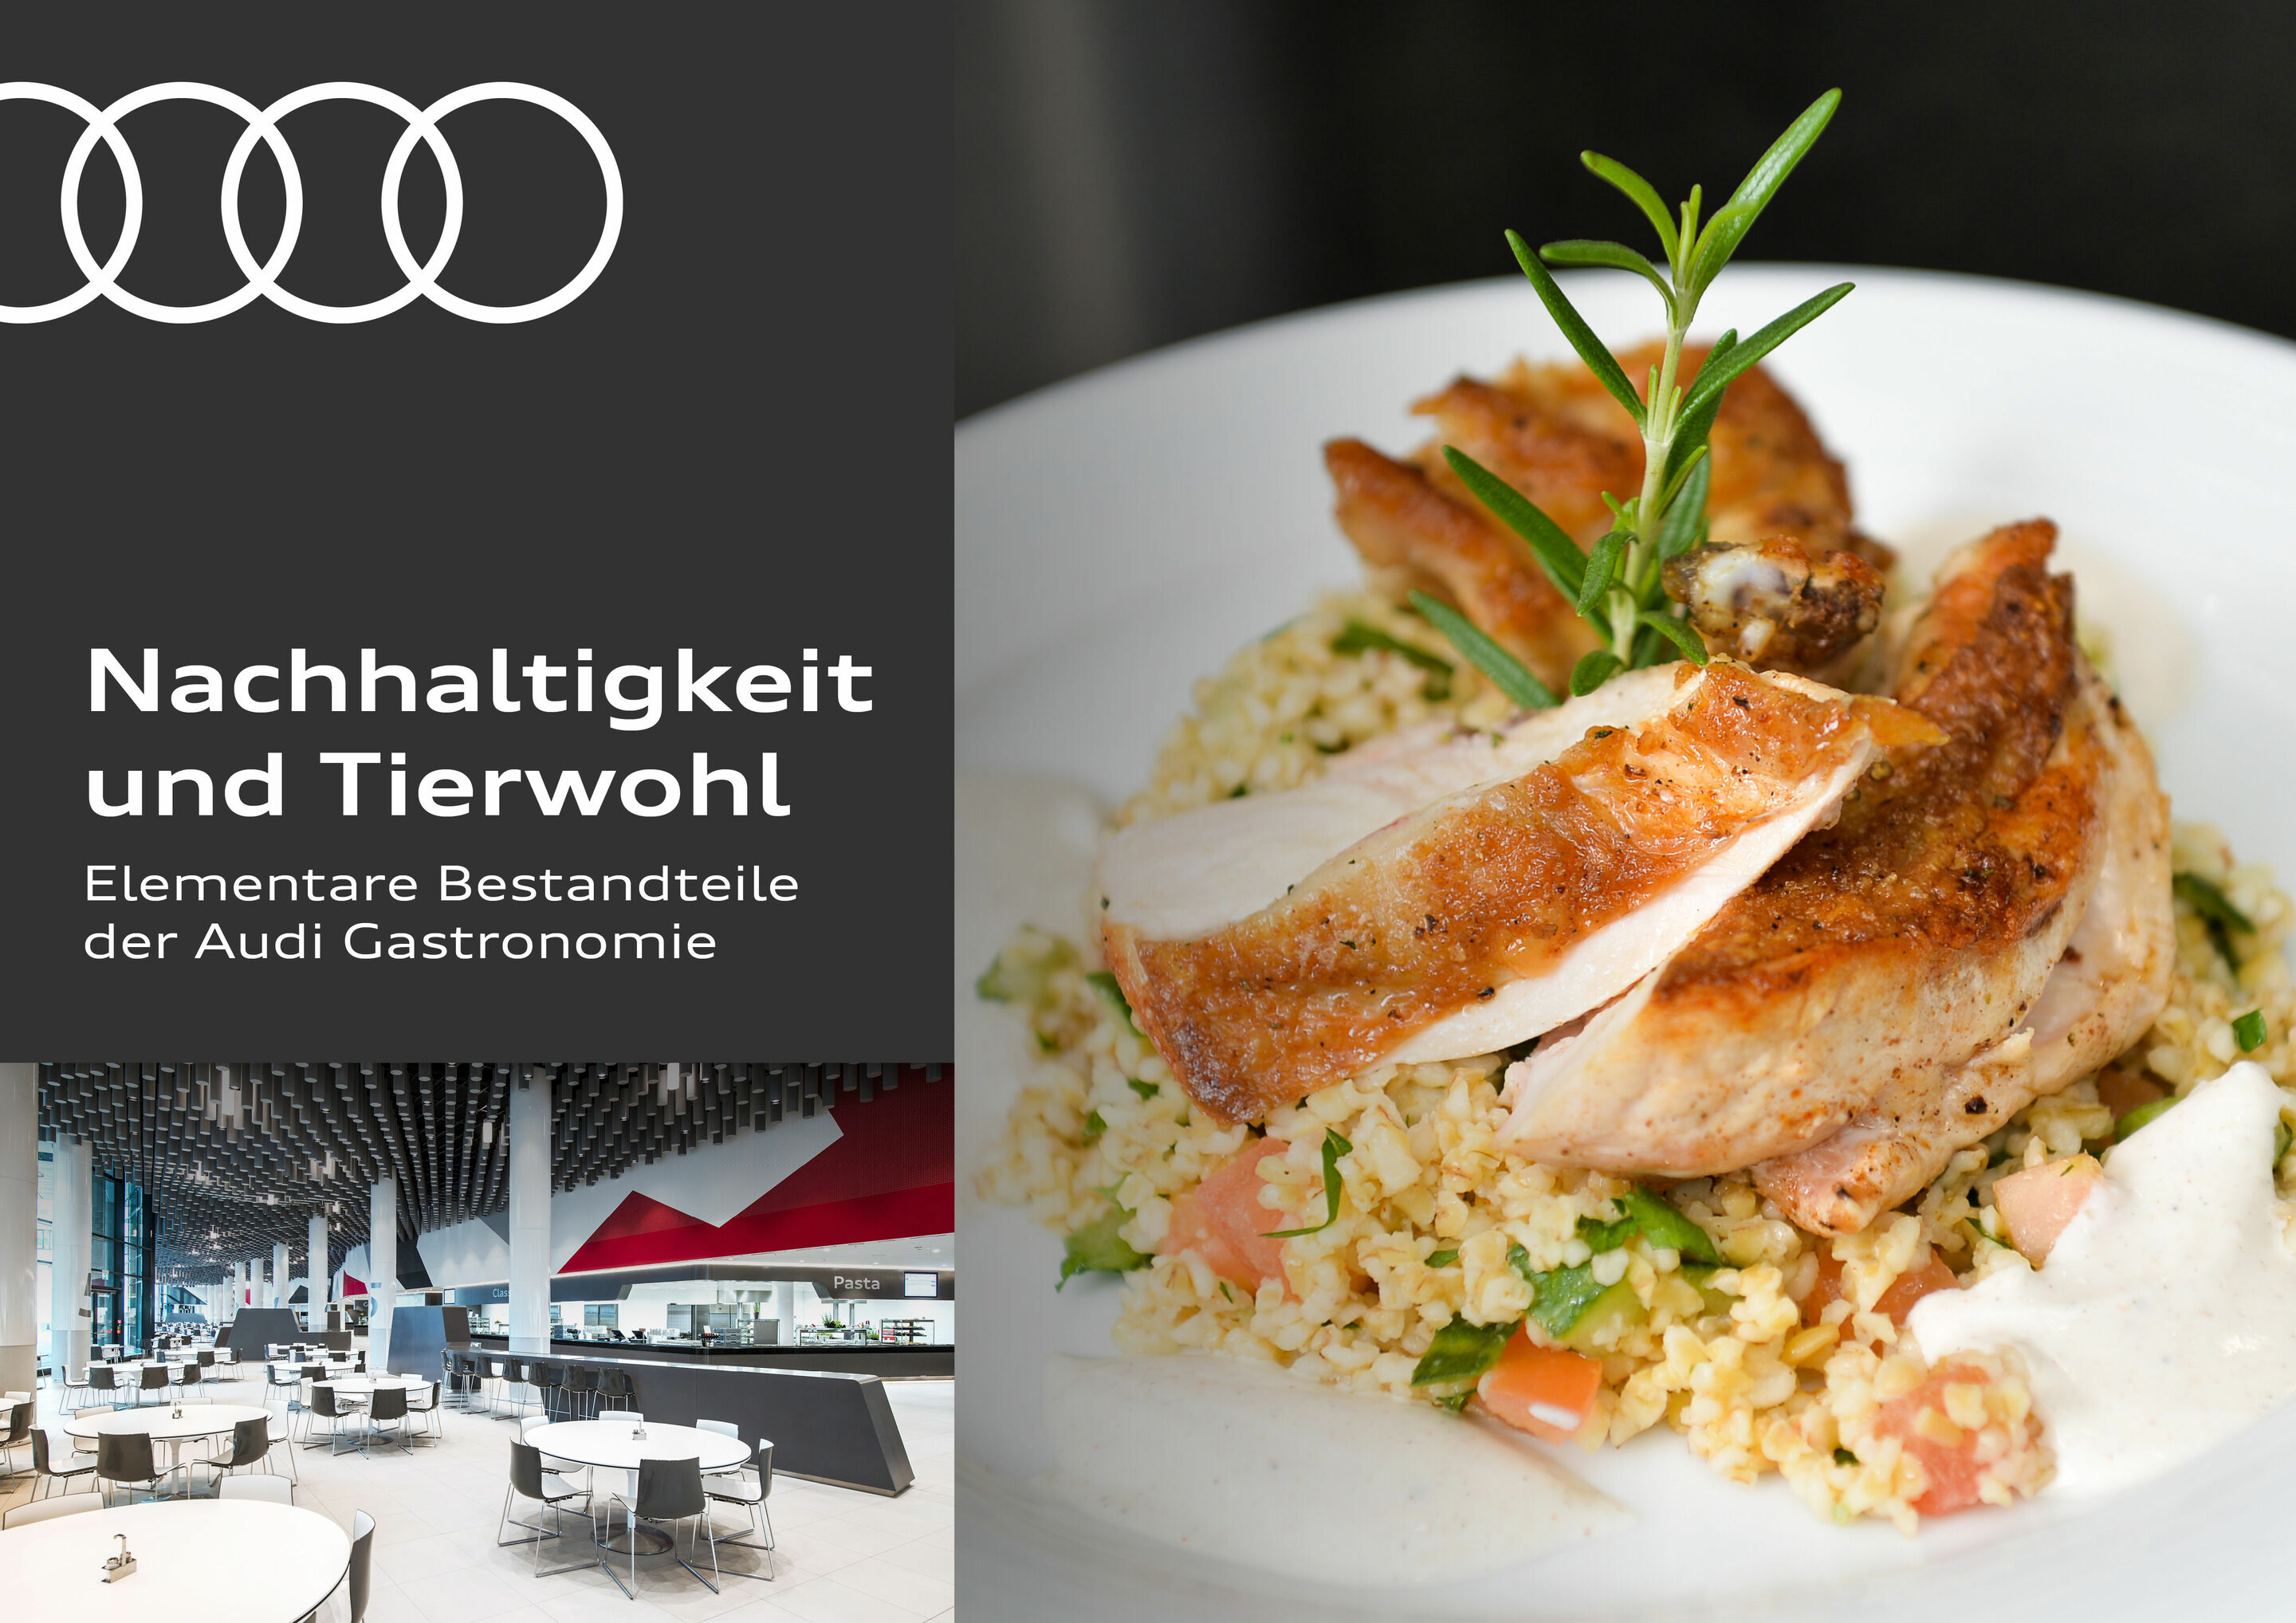 Nachhaltigkeit und Tierwohl als elementare Bestandteile der Audi Gastronomie